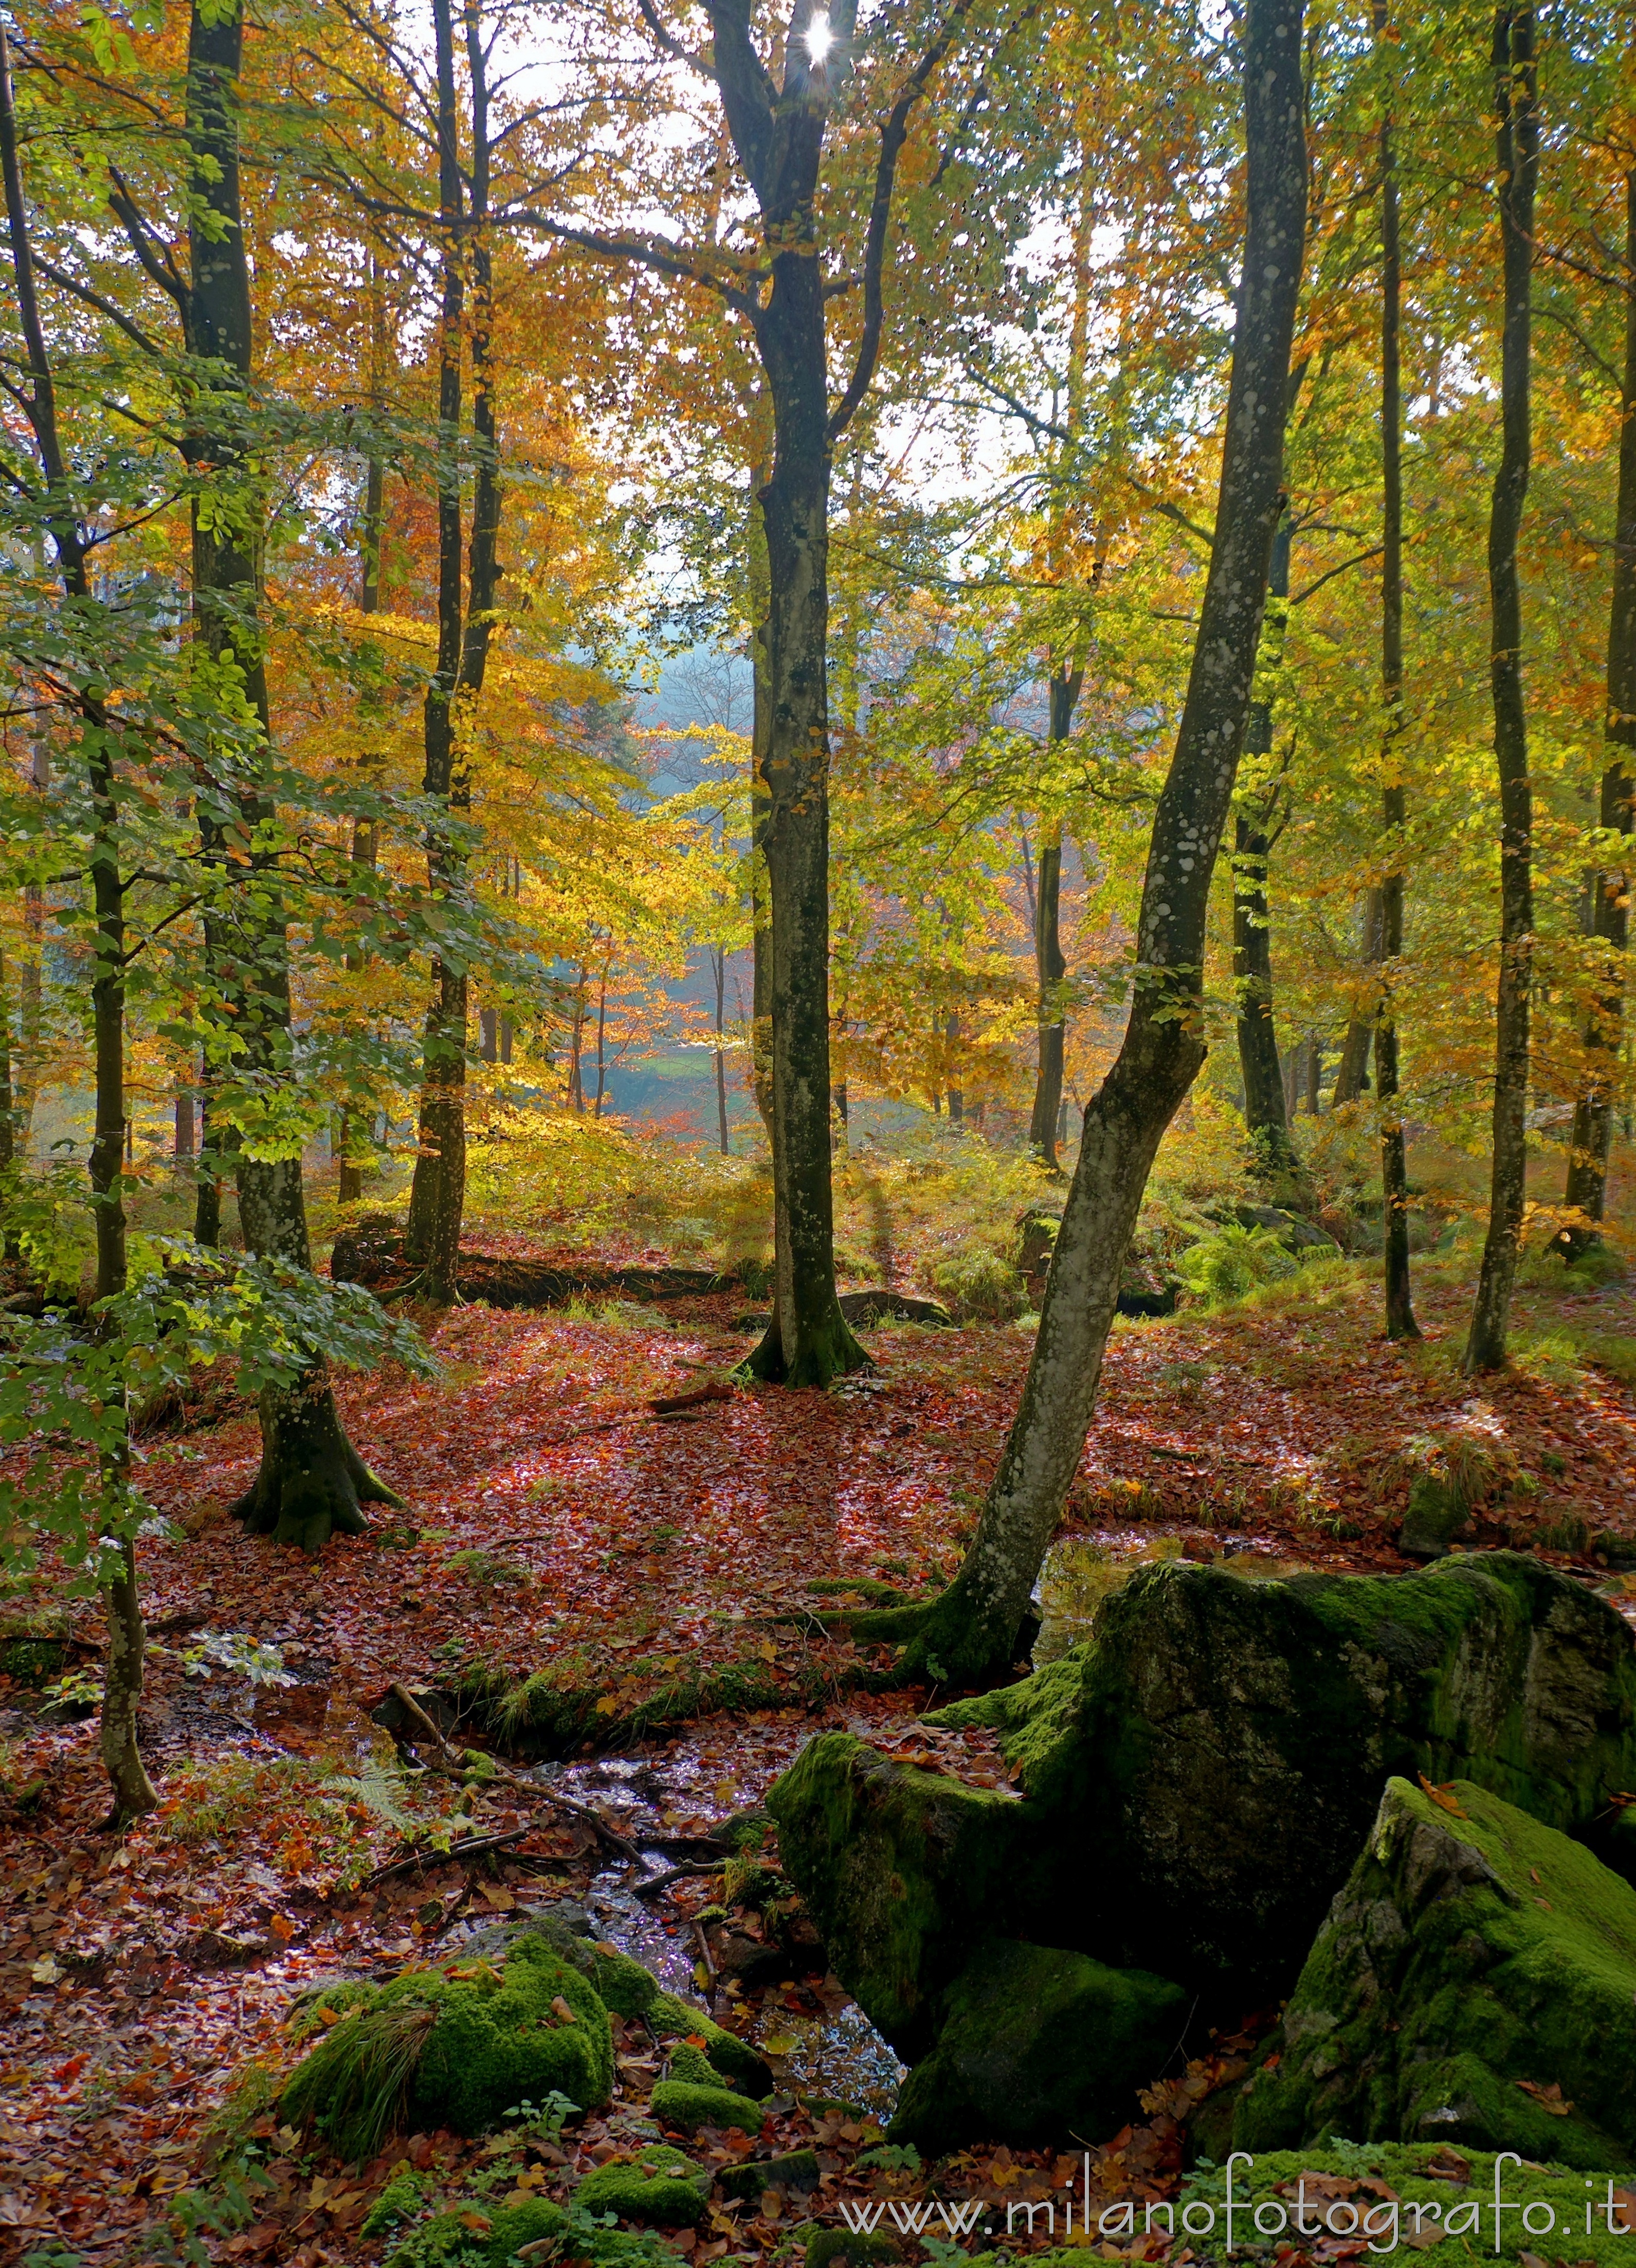 Biella (Italy): Autumn forest in backlight near the Sanctuary of Oropa - Biella (Italy)